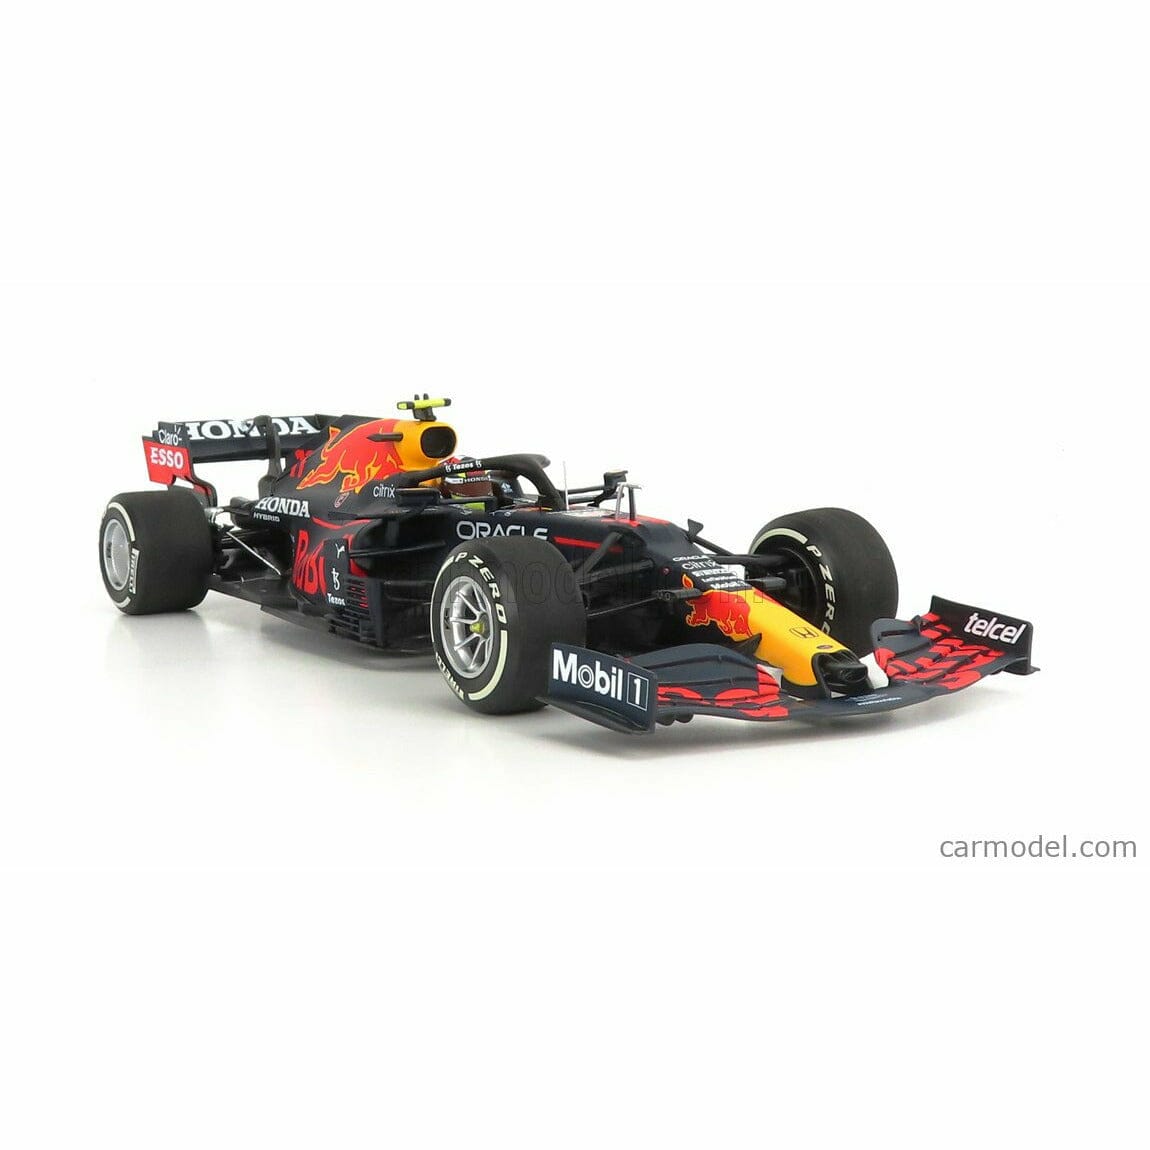 kompas Portugees lekken F1 Car Models | Licensed Merchandise | CMC Motorsports®